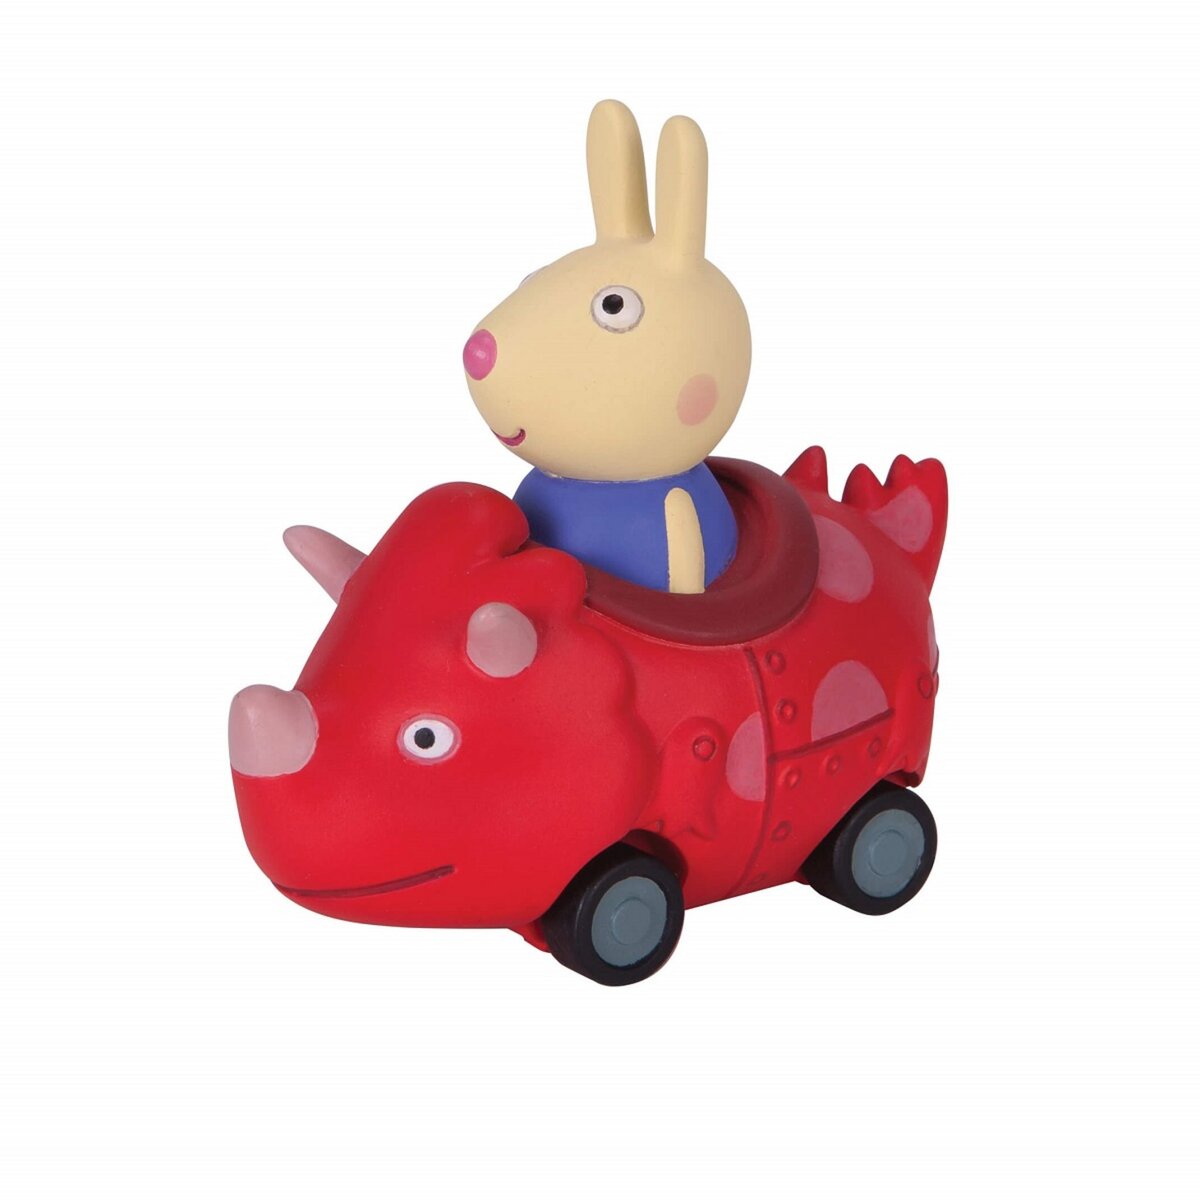 GIOCHI PREZIOSI Mini Buggy véhicule + personnage Lapine